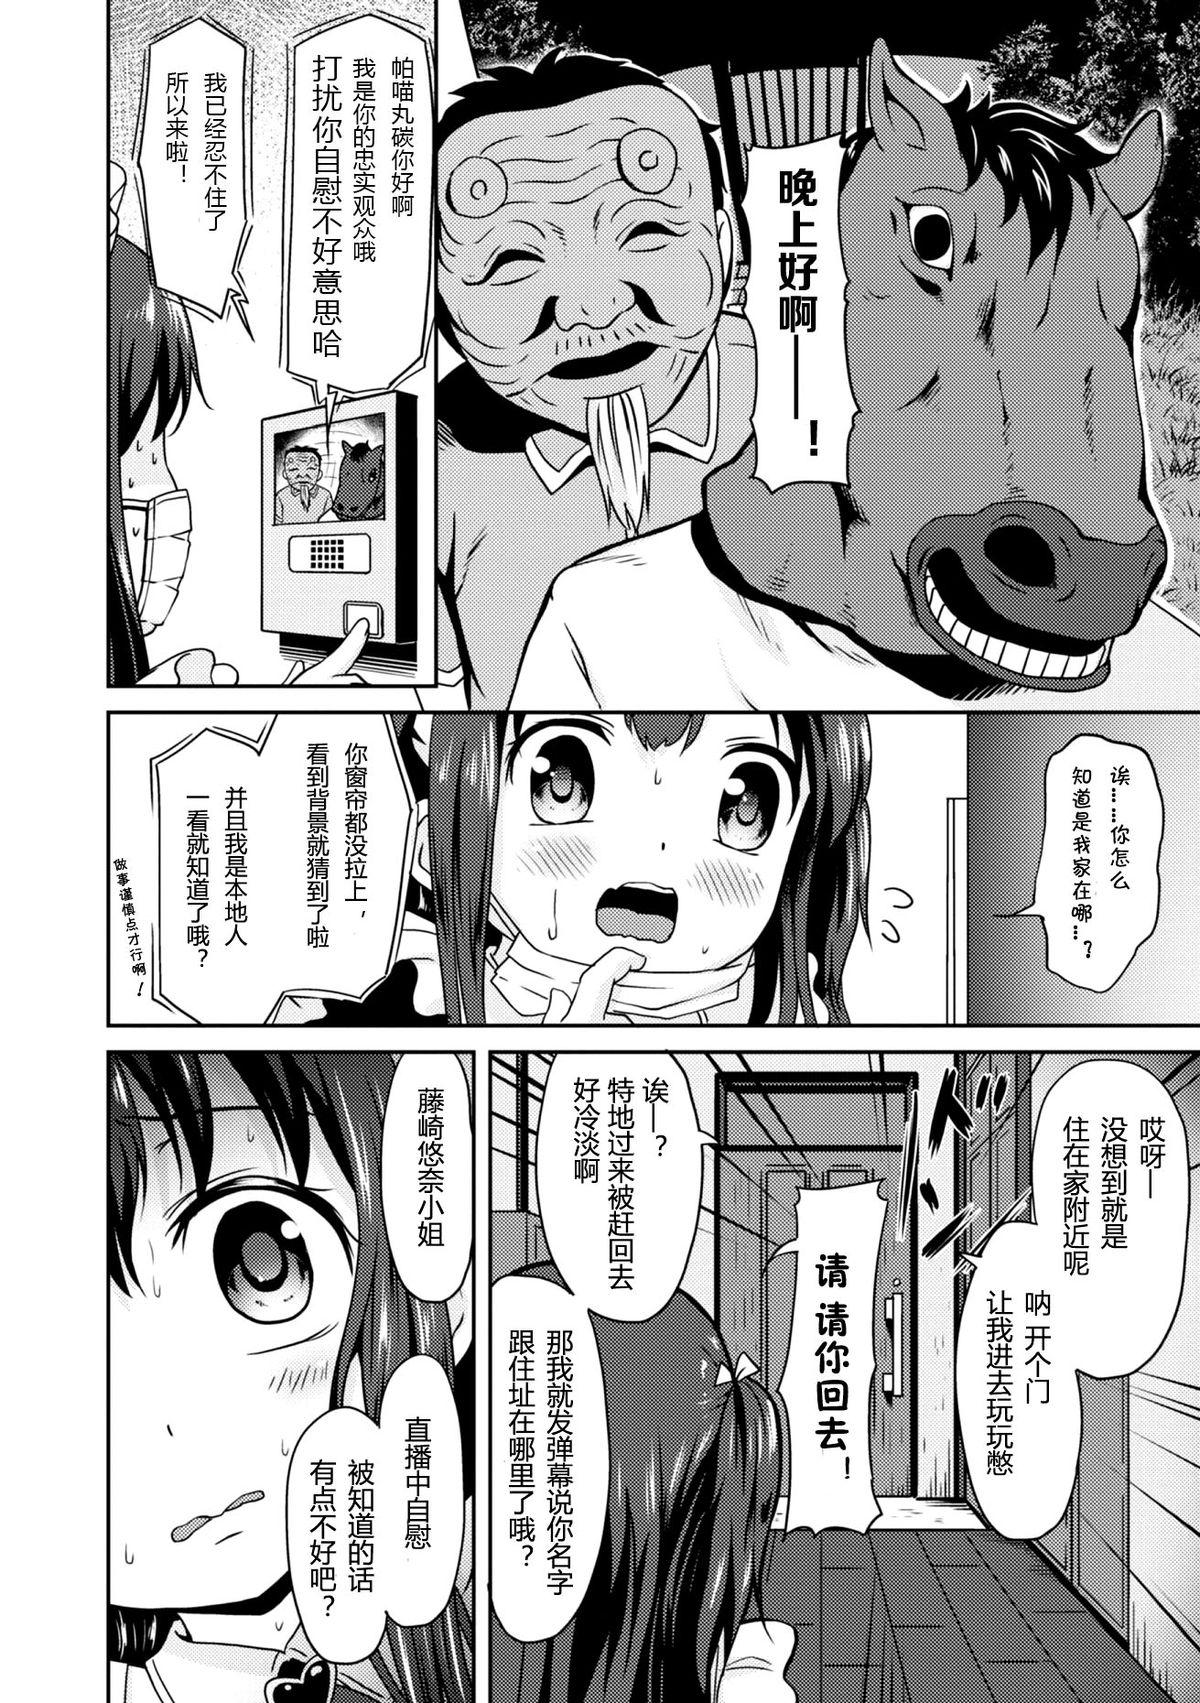 Pregnant "Jigoku no" Panyumaru Seihaishin - Maboroshi no Guest Kai "ReaTotsu" Rola - Page 6